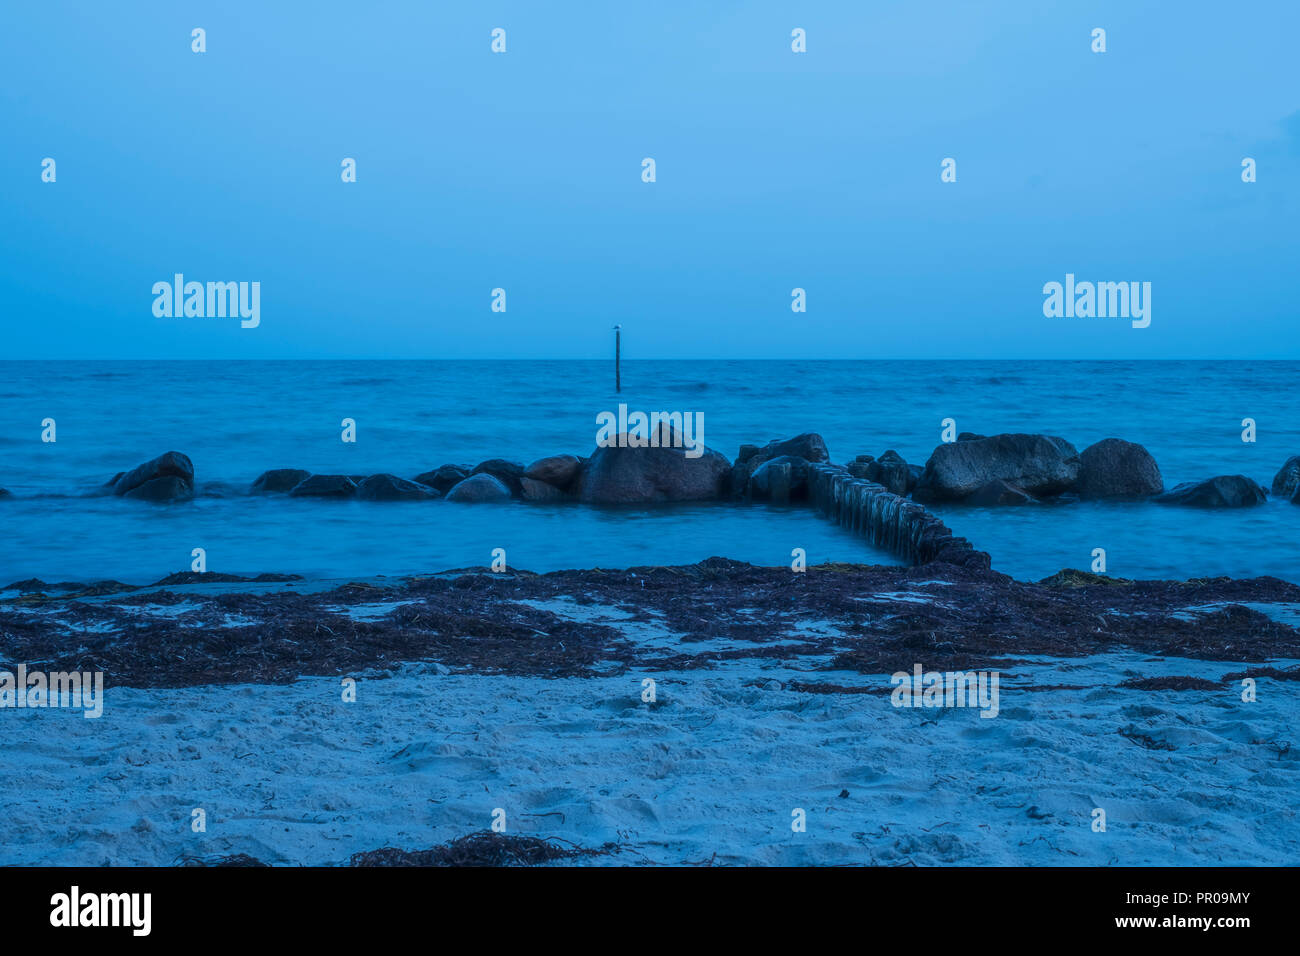 Des pierres sur la rive dans l'eau laiteuse bleuté après le coucher du soleil au cours de l'heure bleue à Rabylille Beach, à l'île de Moen, Danemark, Scandinavie, l'Europe. Banque D'Images